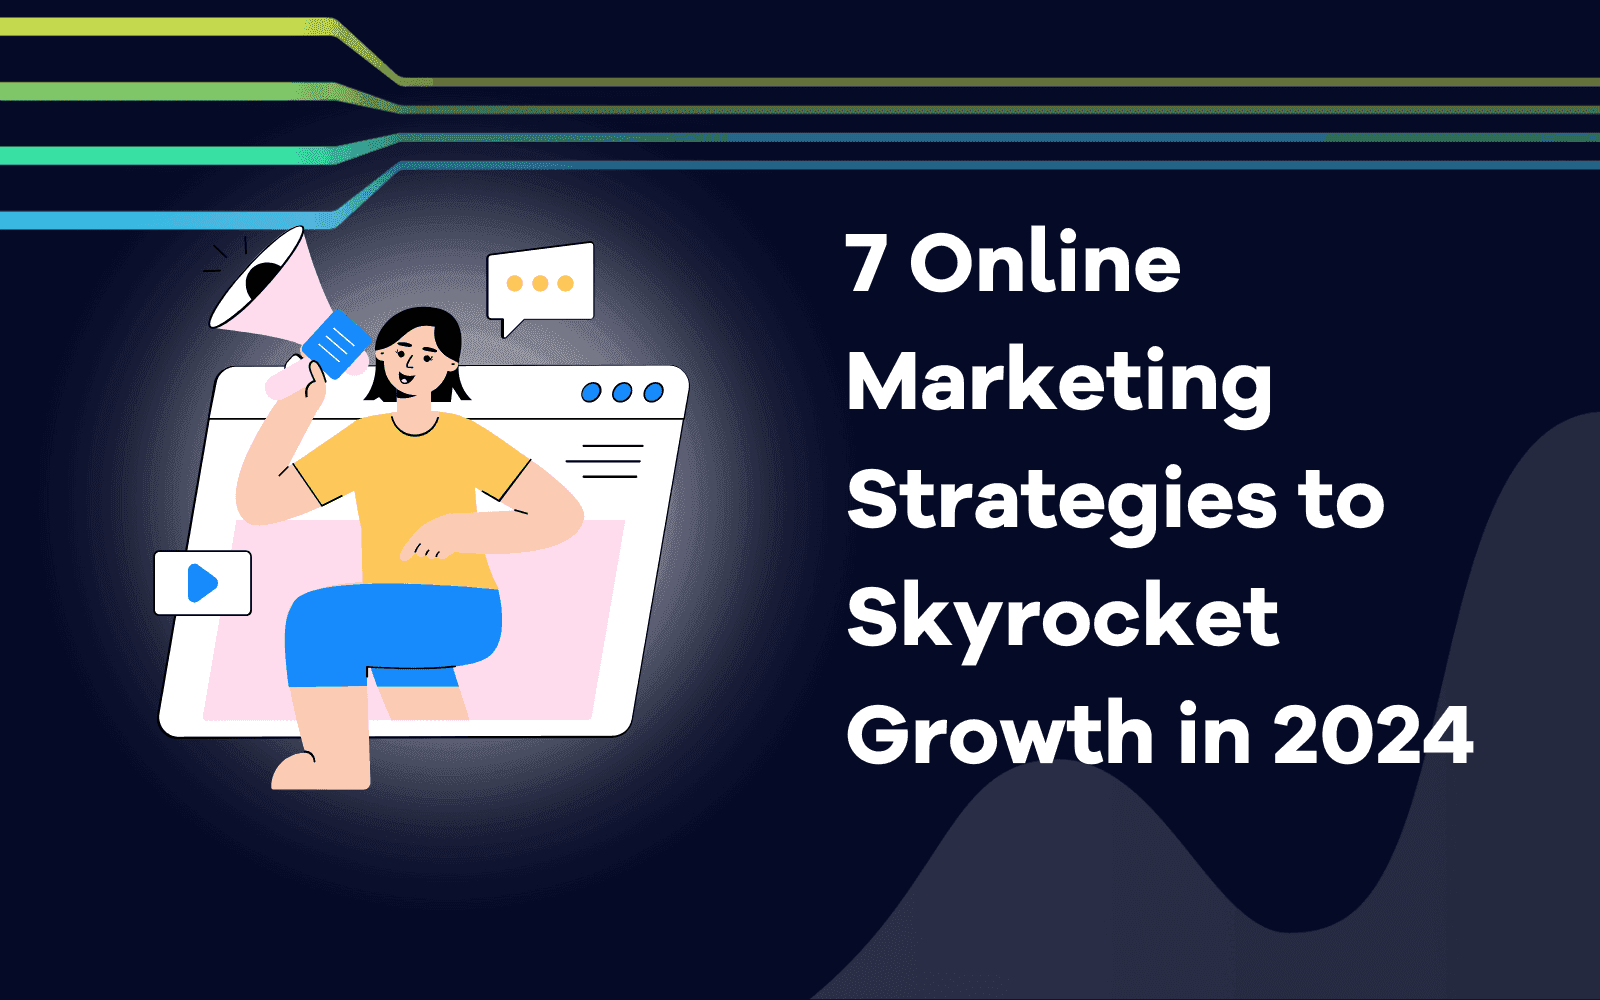 Online Marketing Strategies to Skyrocket Growth in 2024